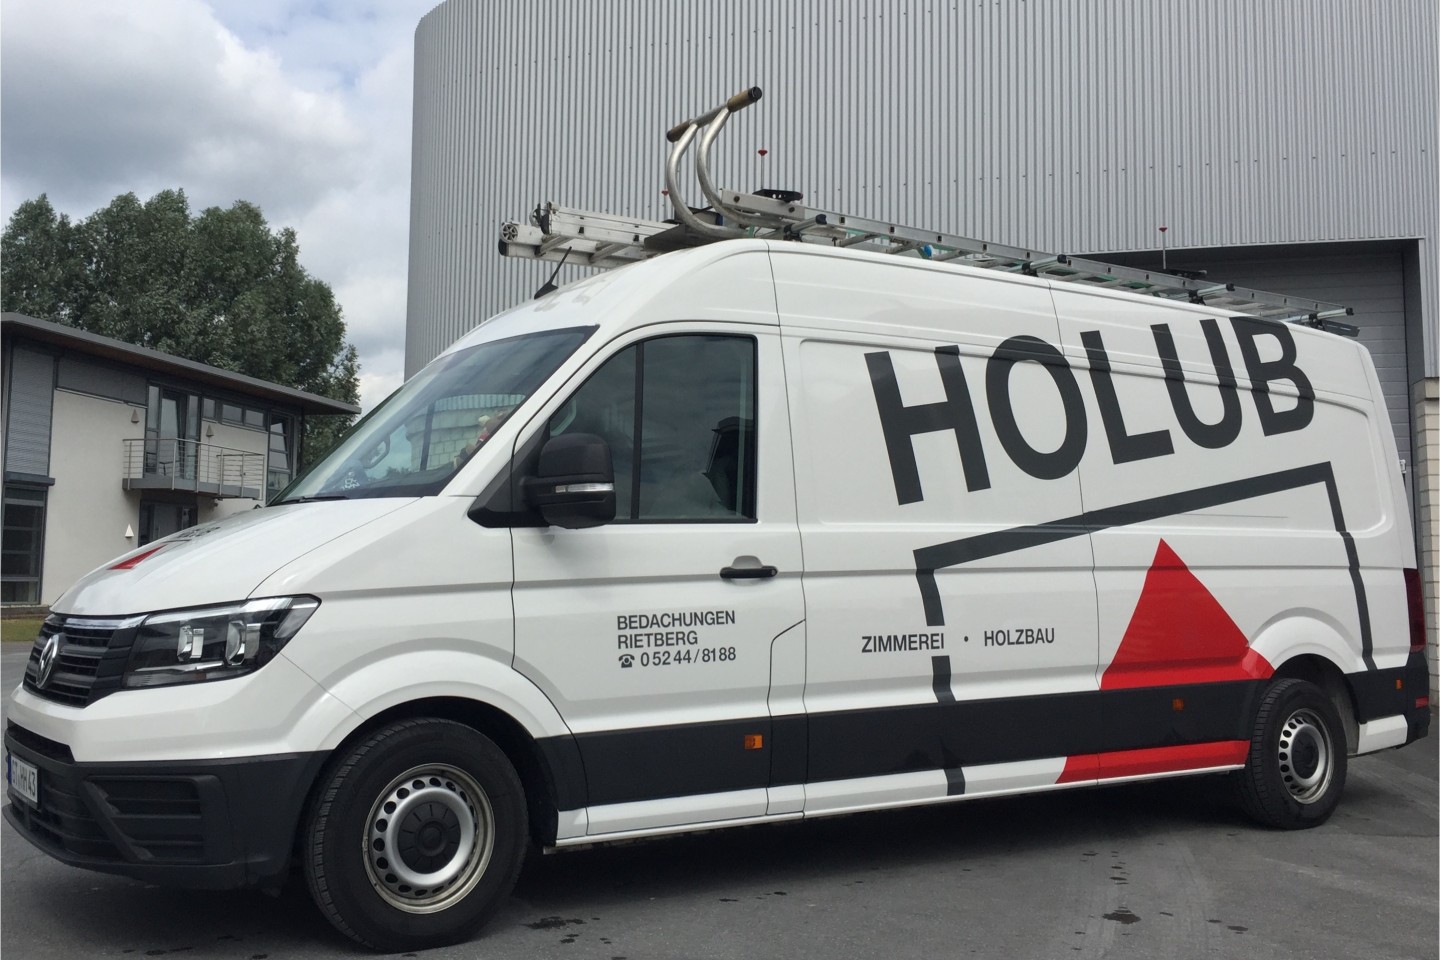 Holub Holzbau GmbH